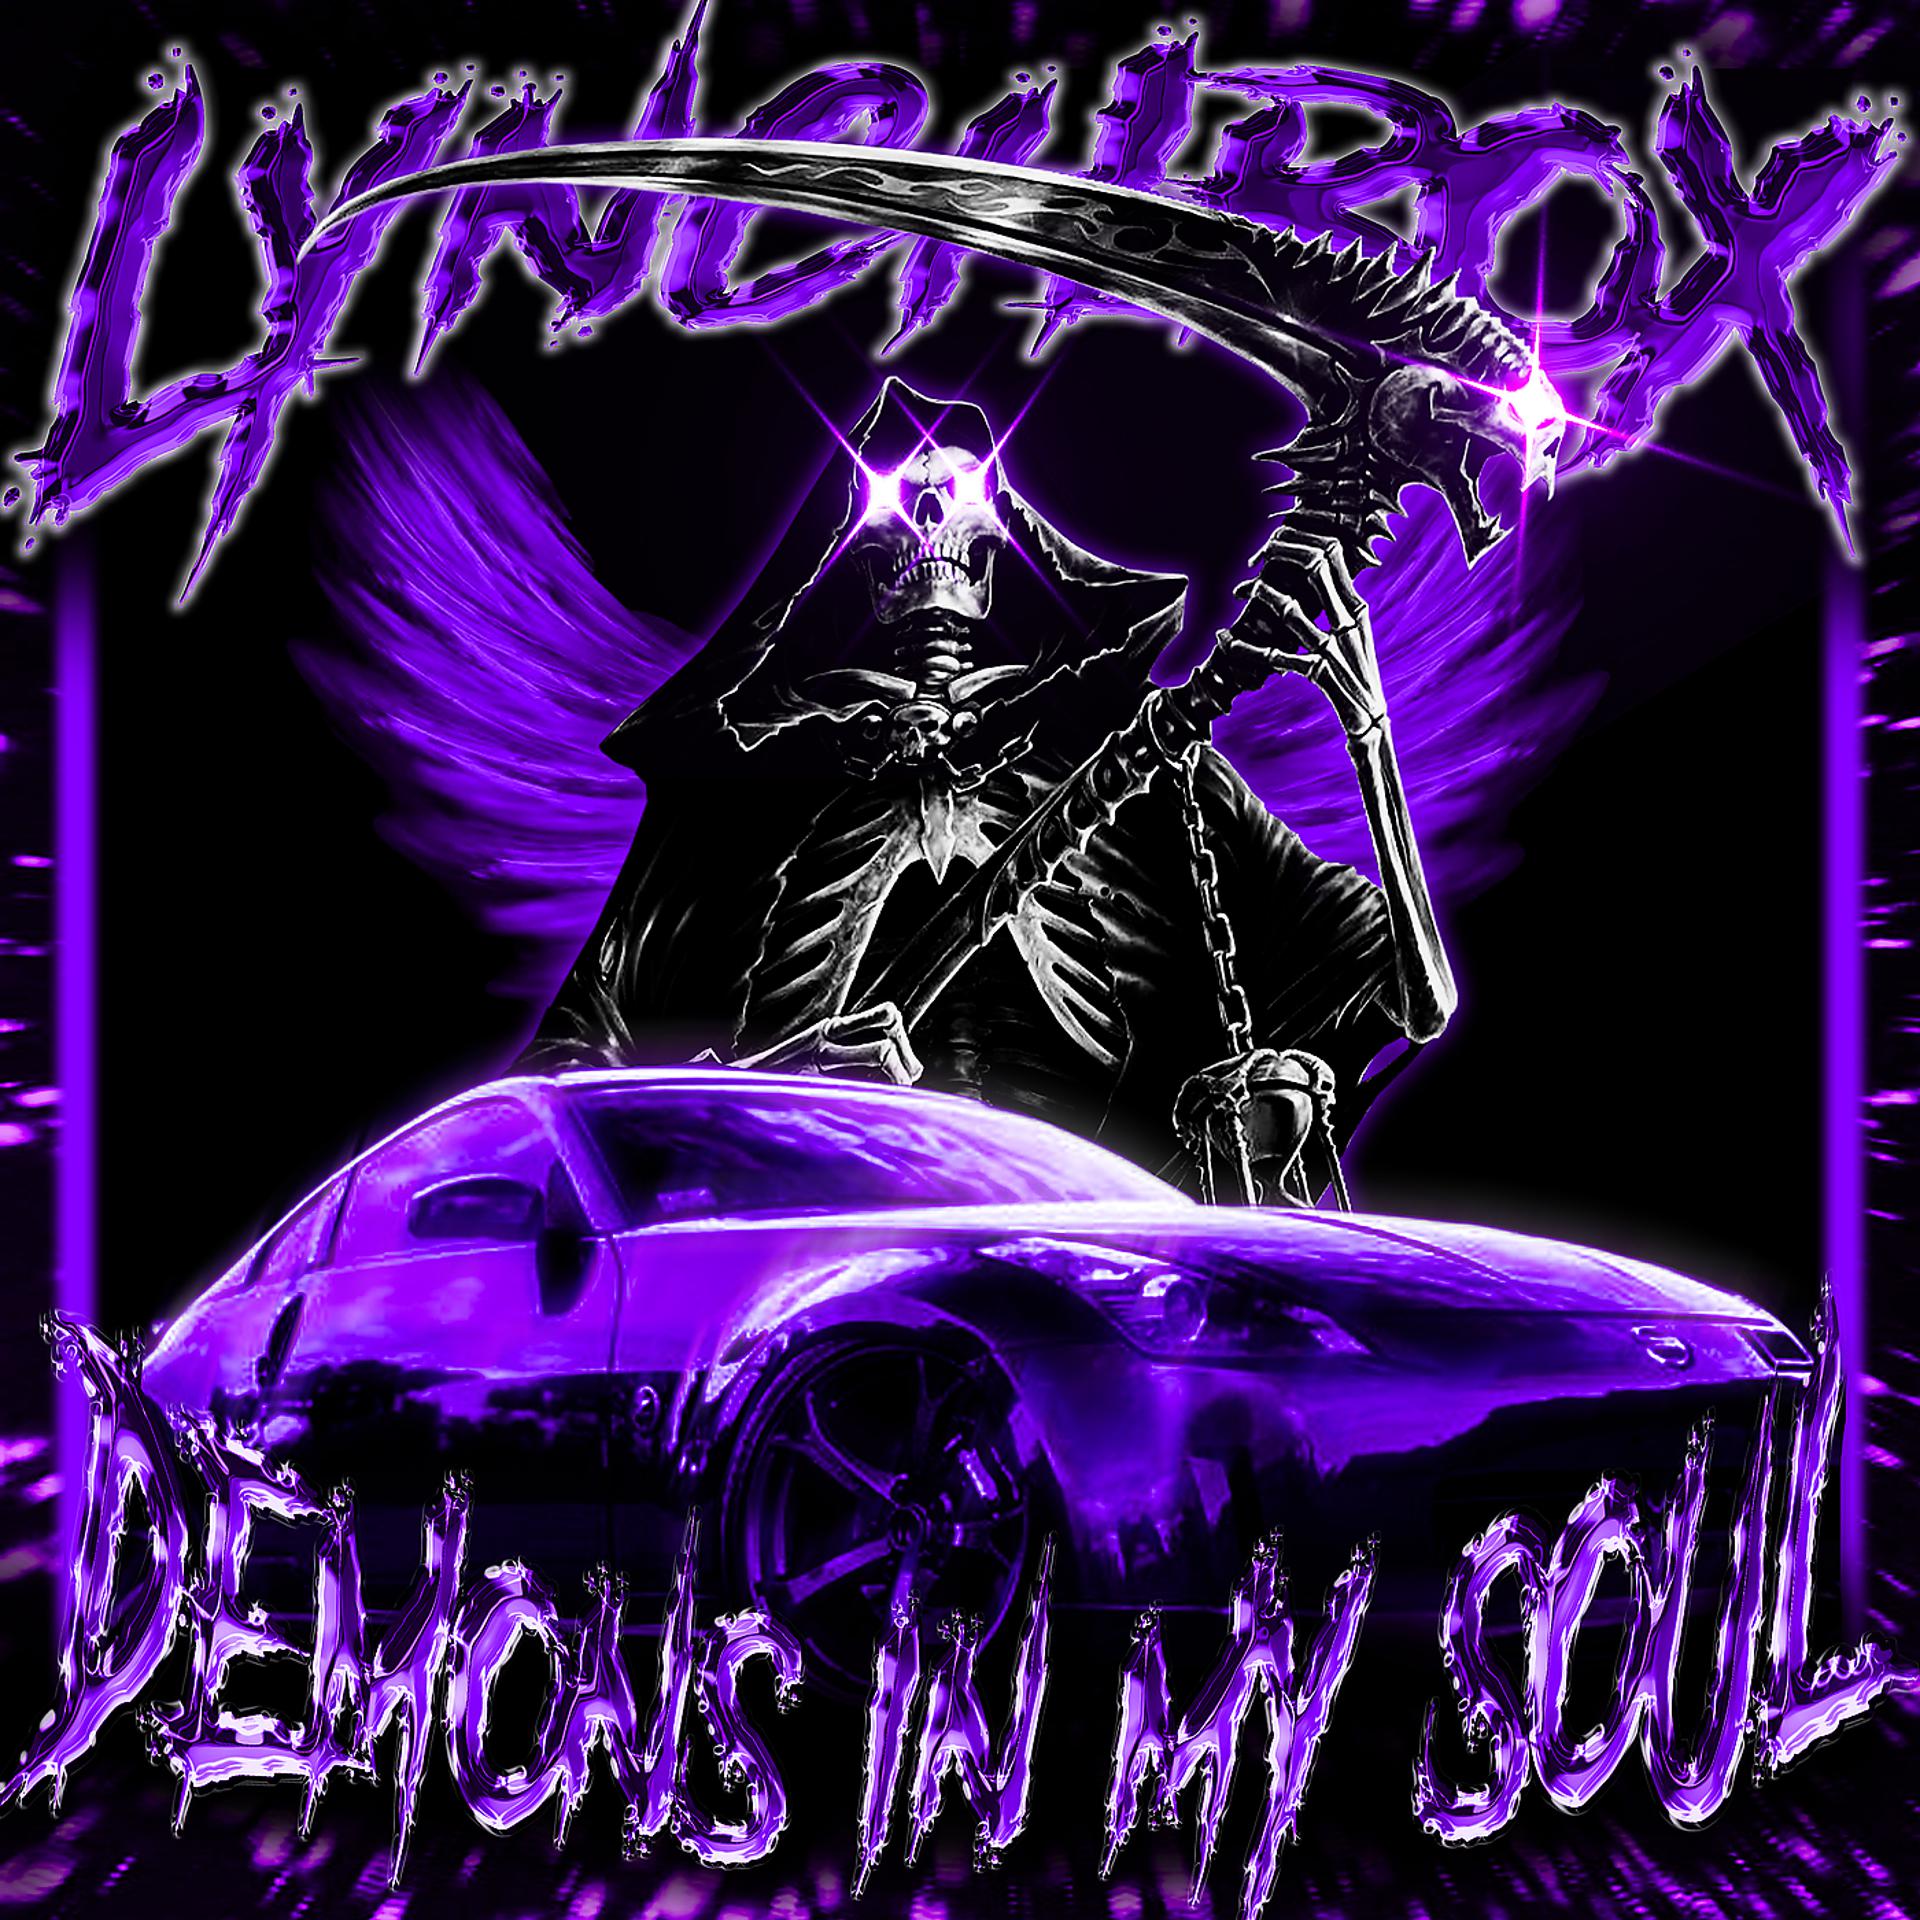 Постер альбома Demons in My Soul